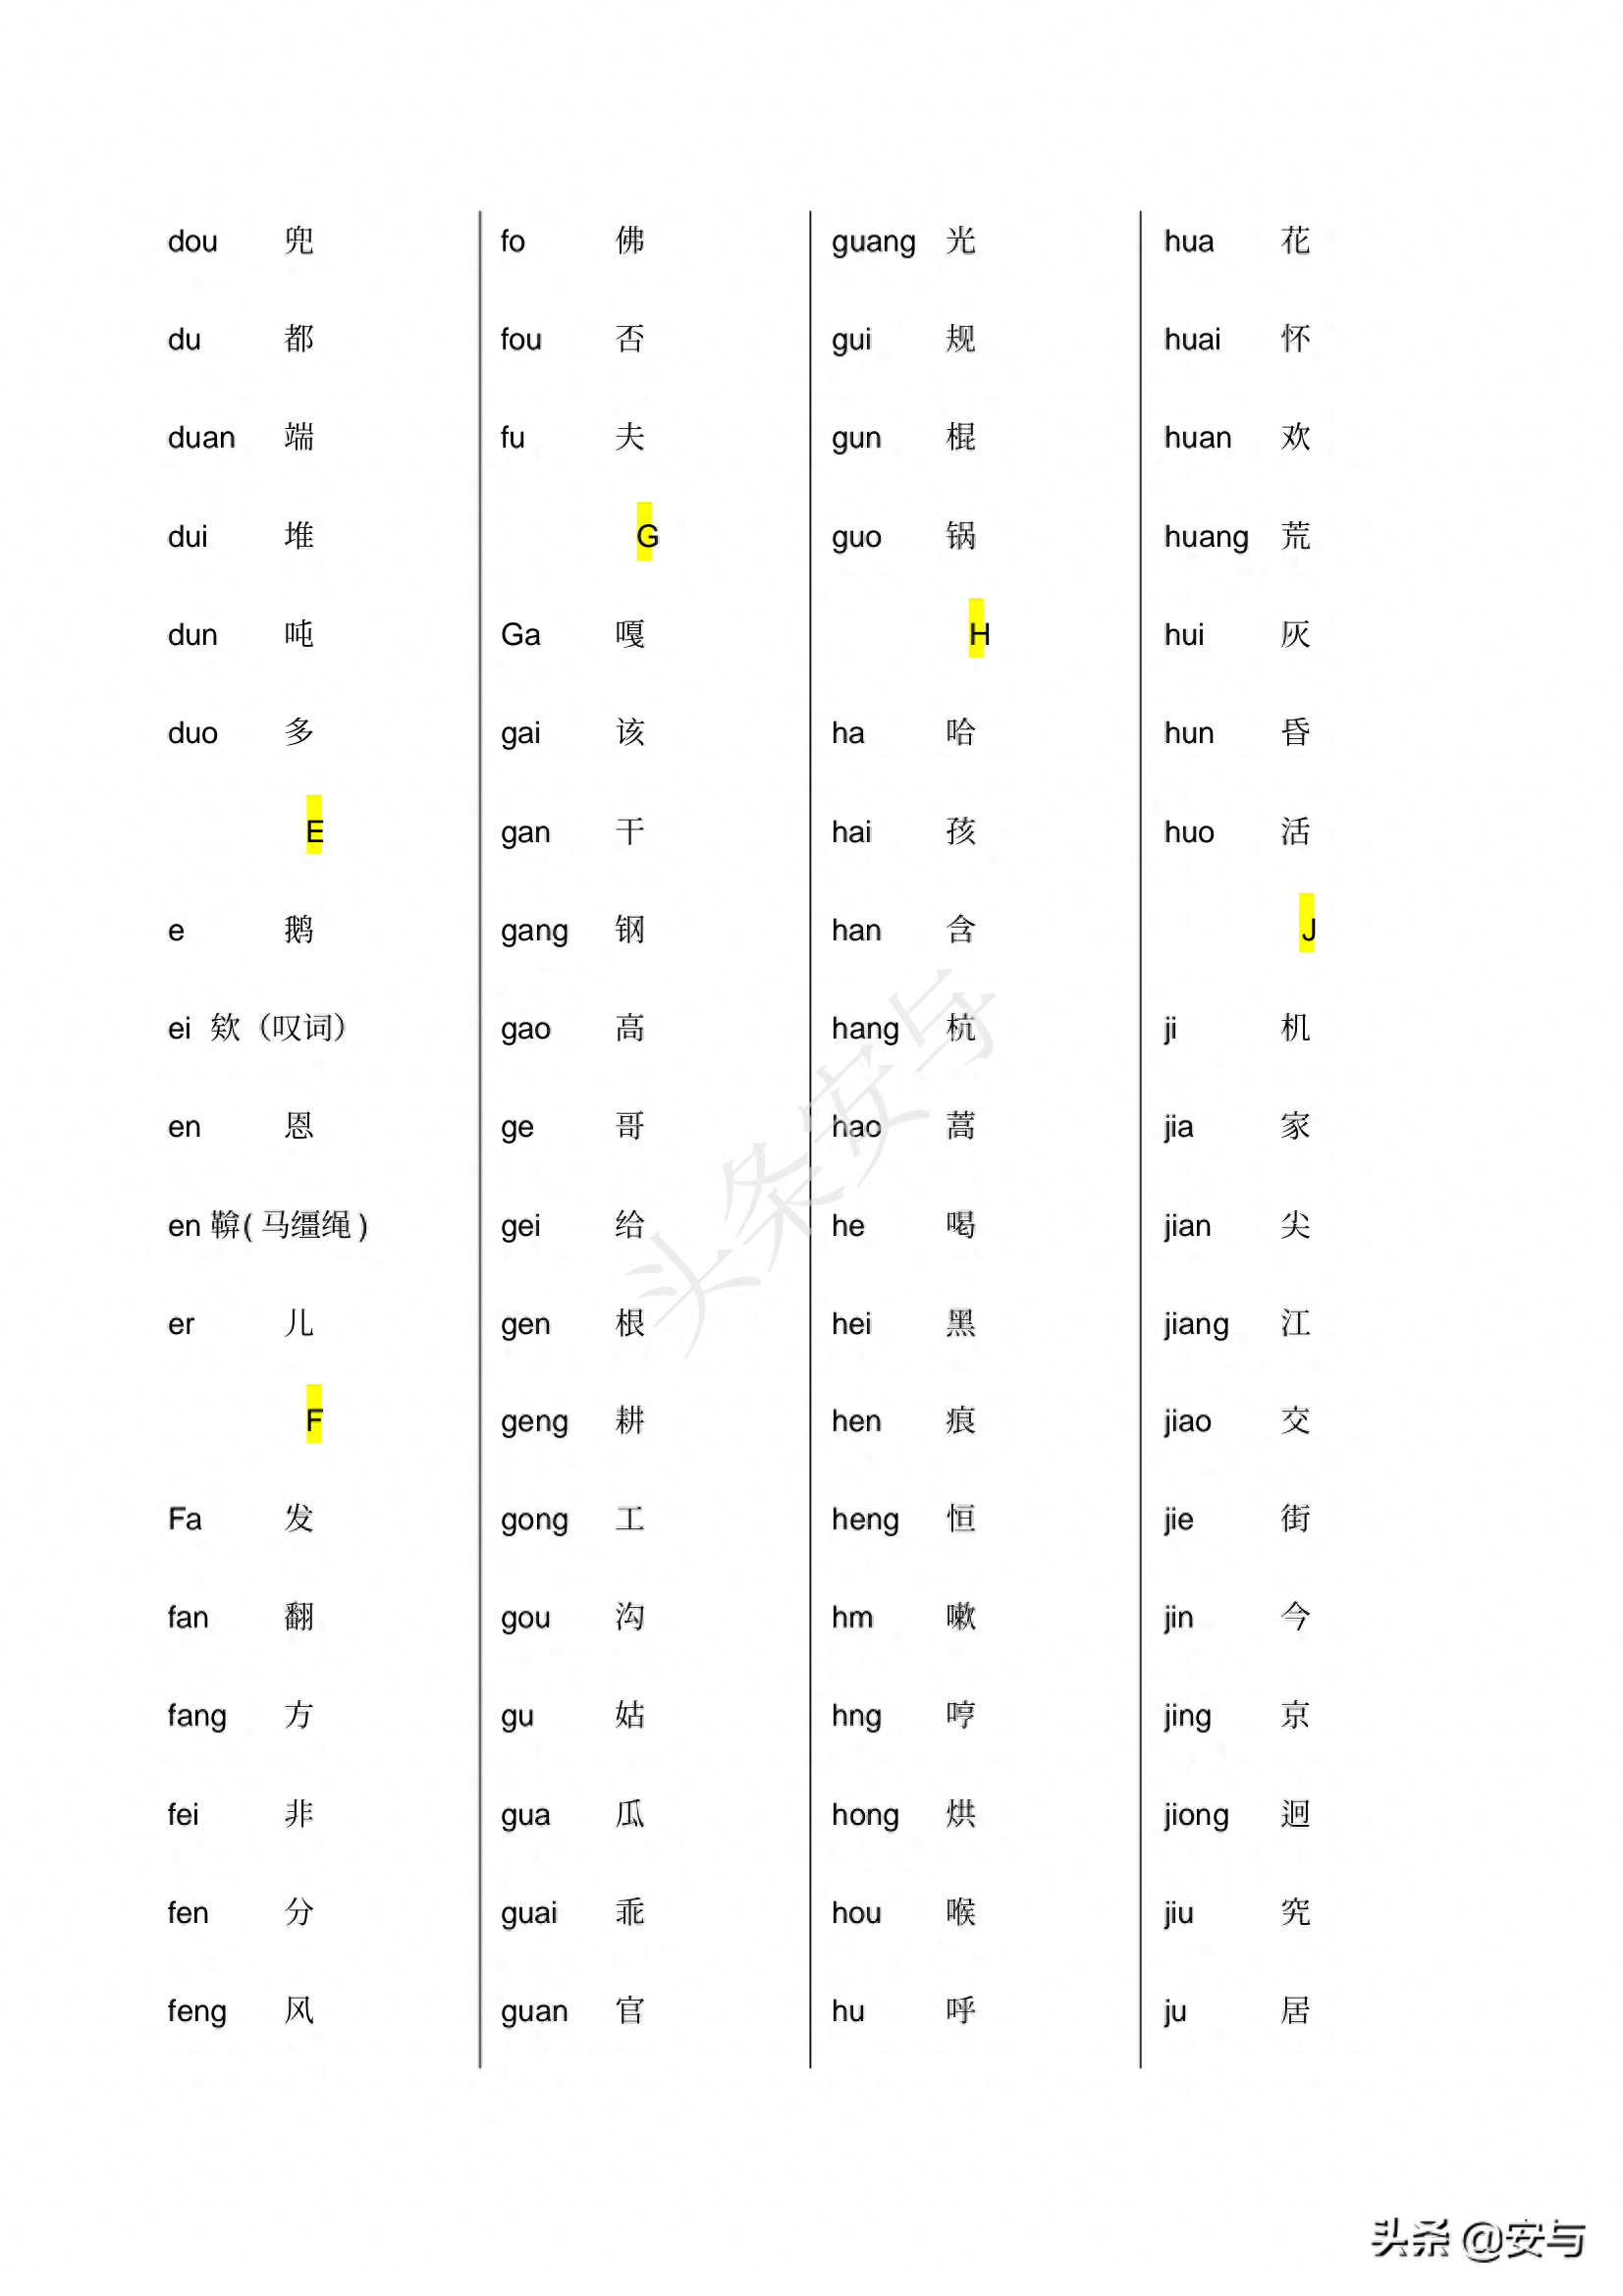 汉语拼音索引表，对应中文字发音(注解)，做对照